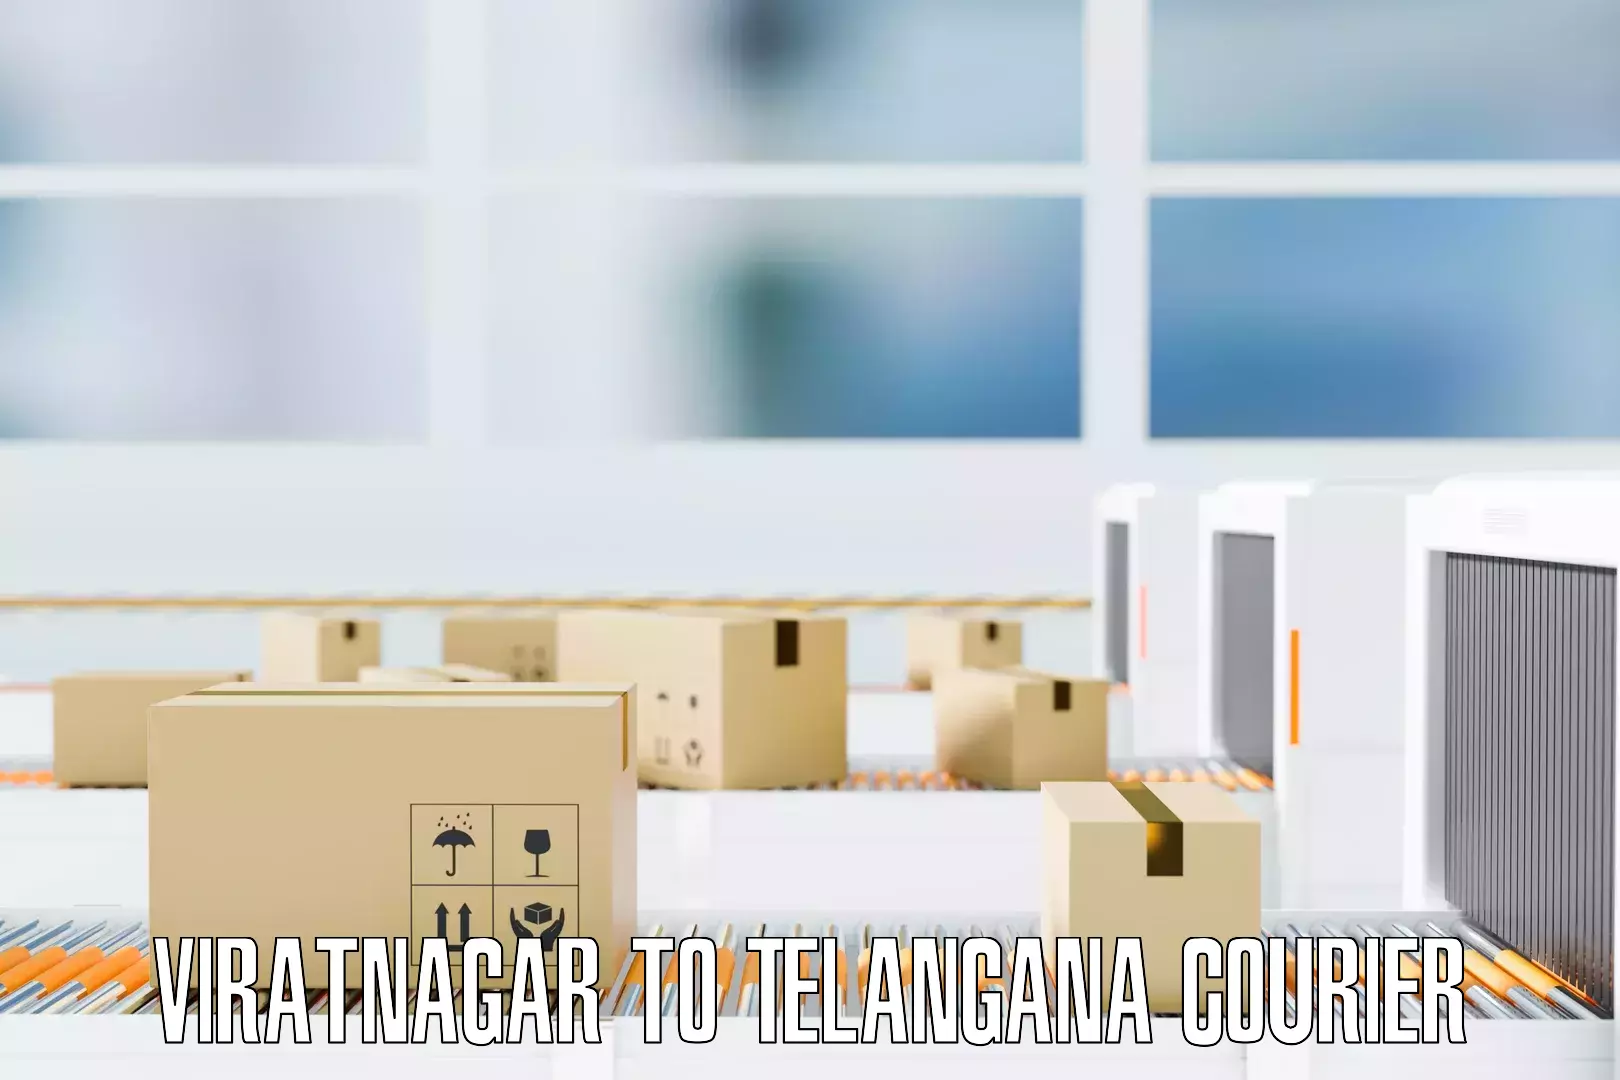 Expert furniture movers Viratnagar to Telangana